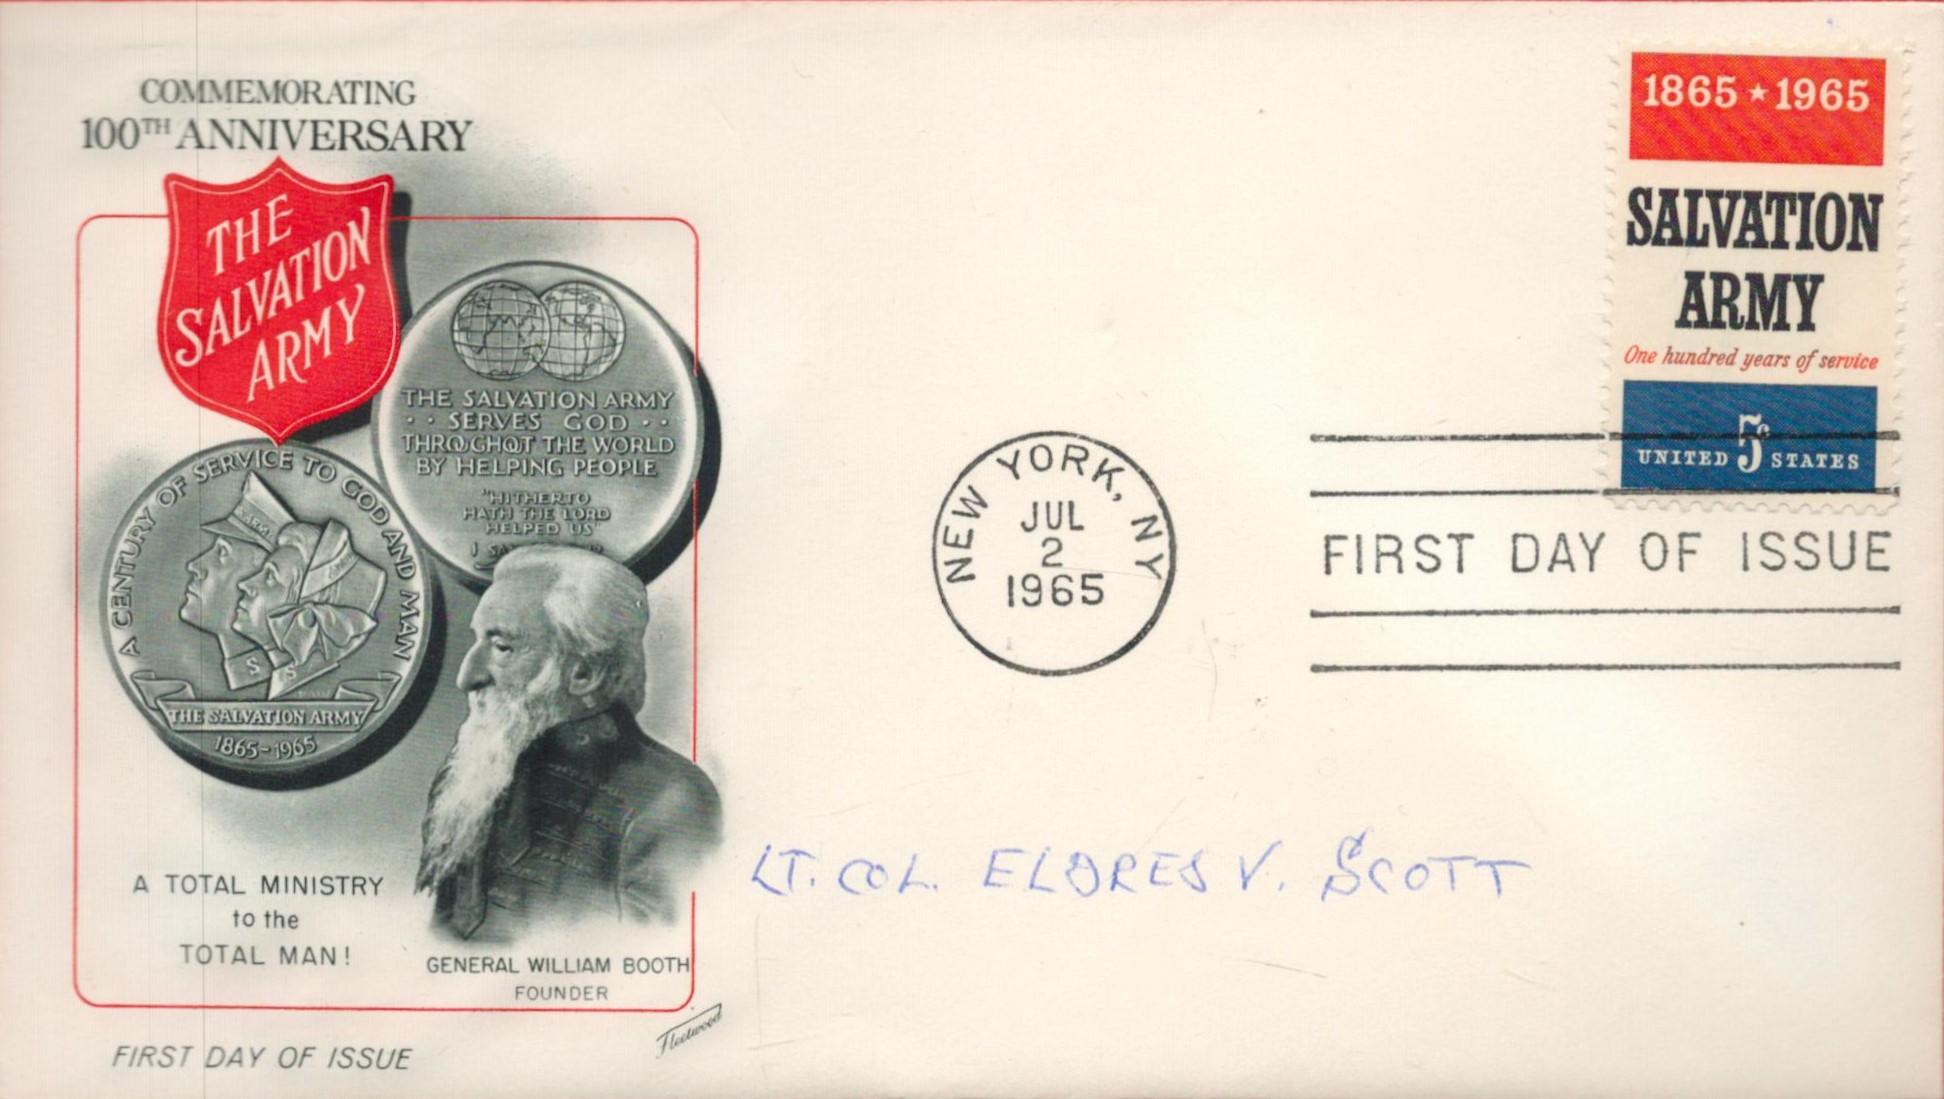 Dolittle Raider Eldred Von Scott Signed The Salvation Army First Day Cover. Jul 2 1965 Postmark.